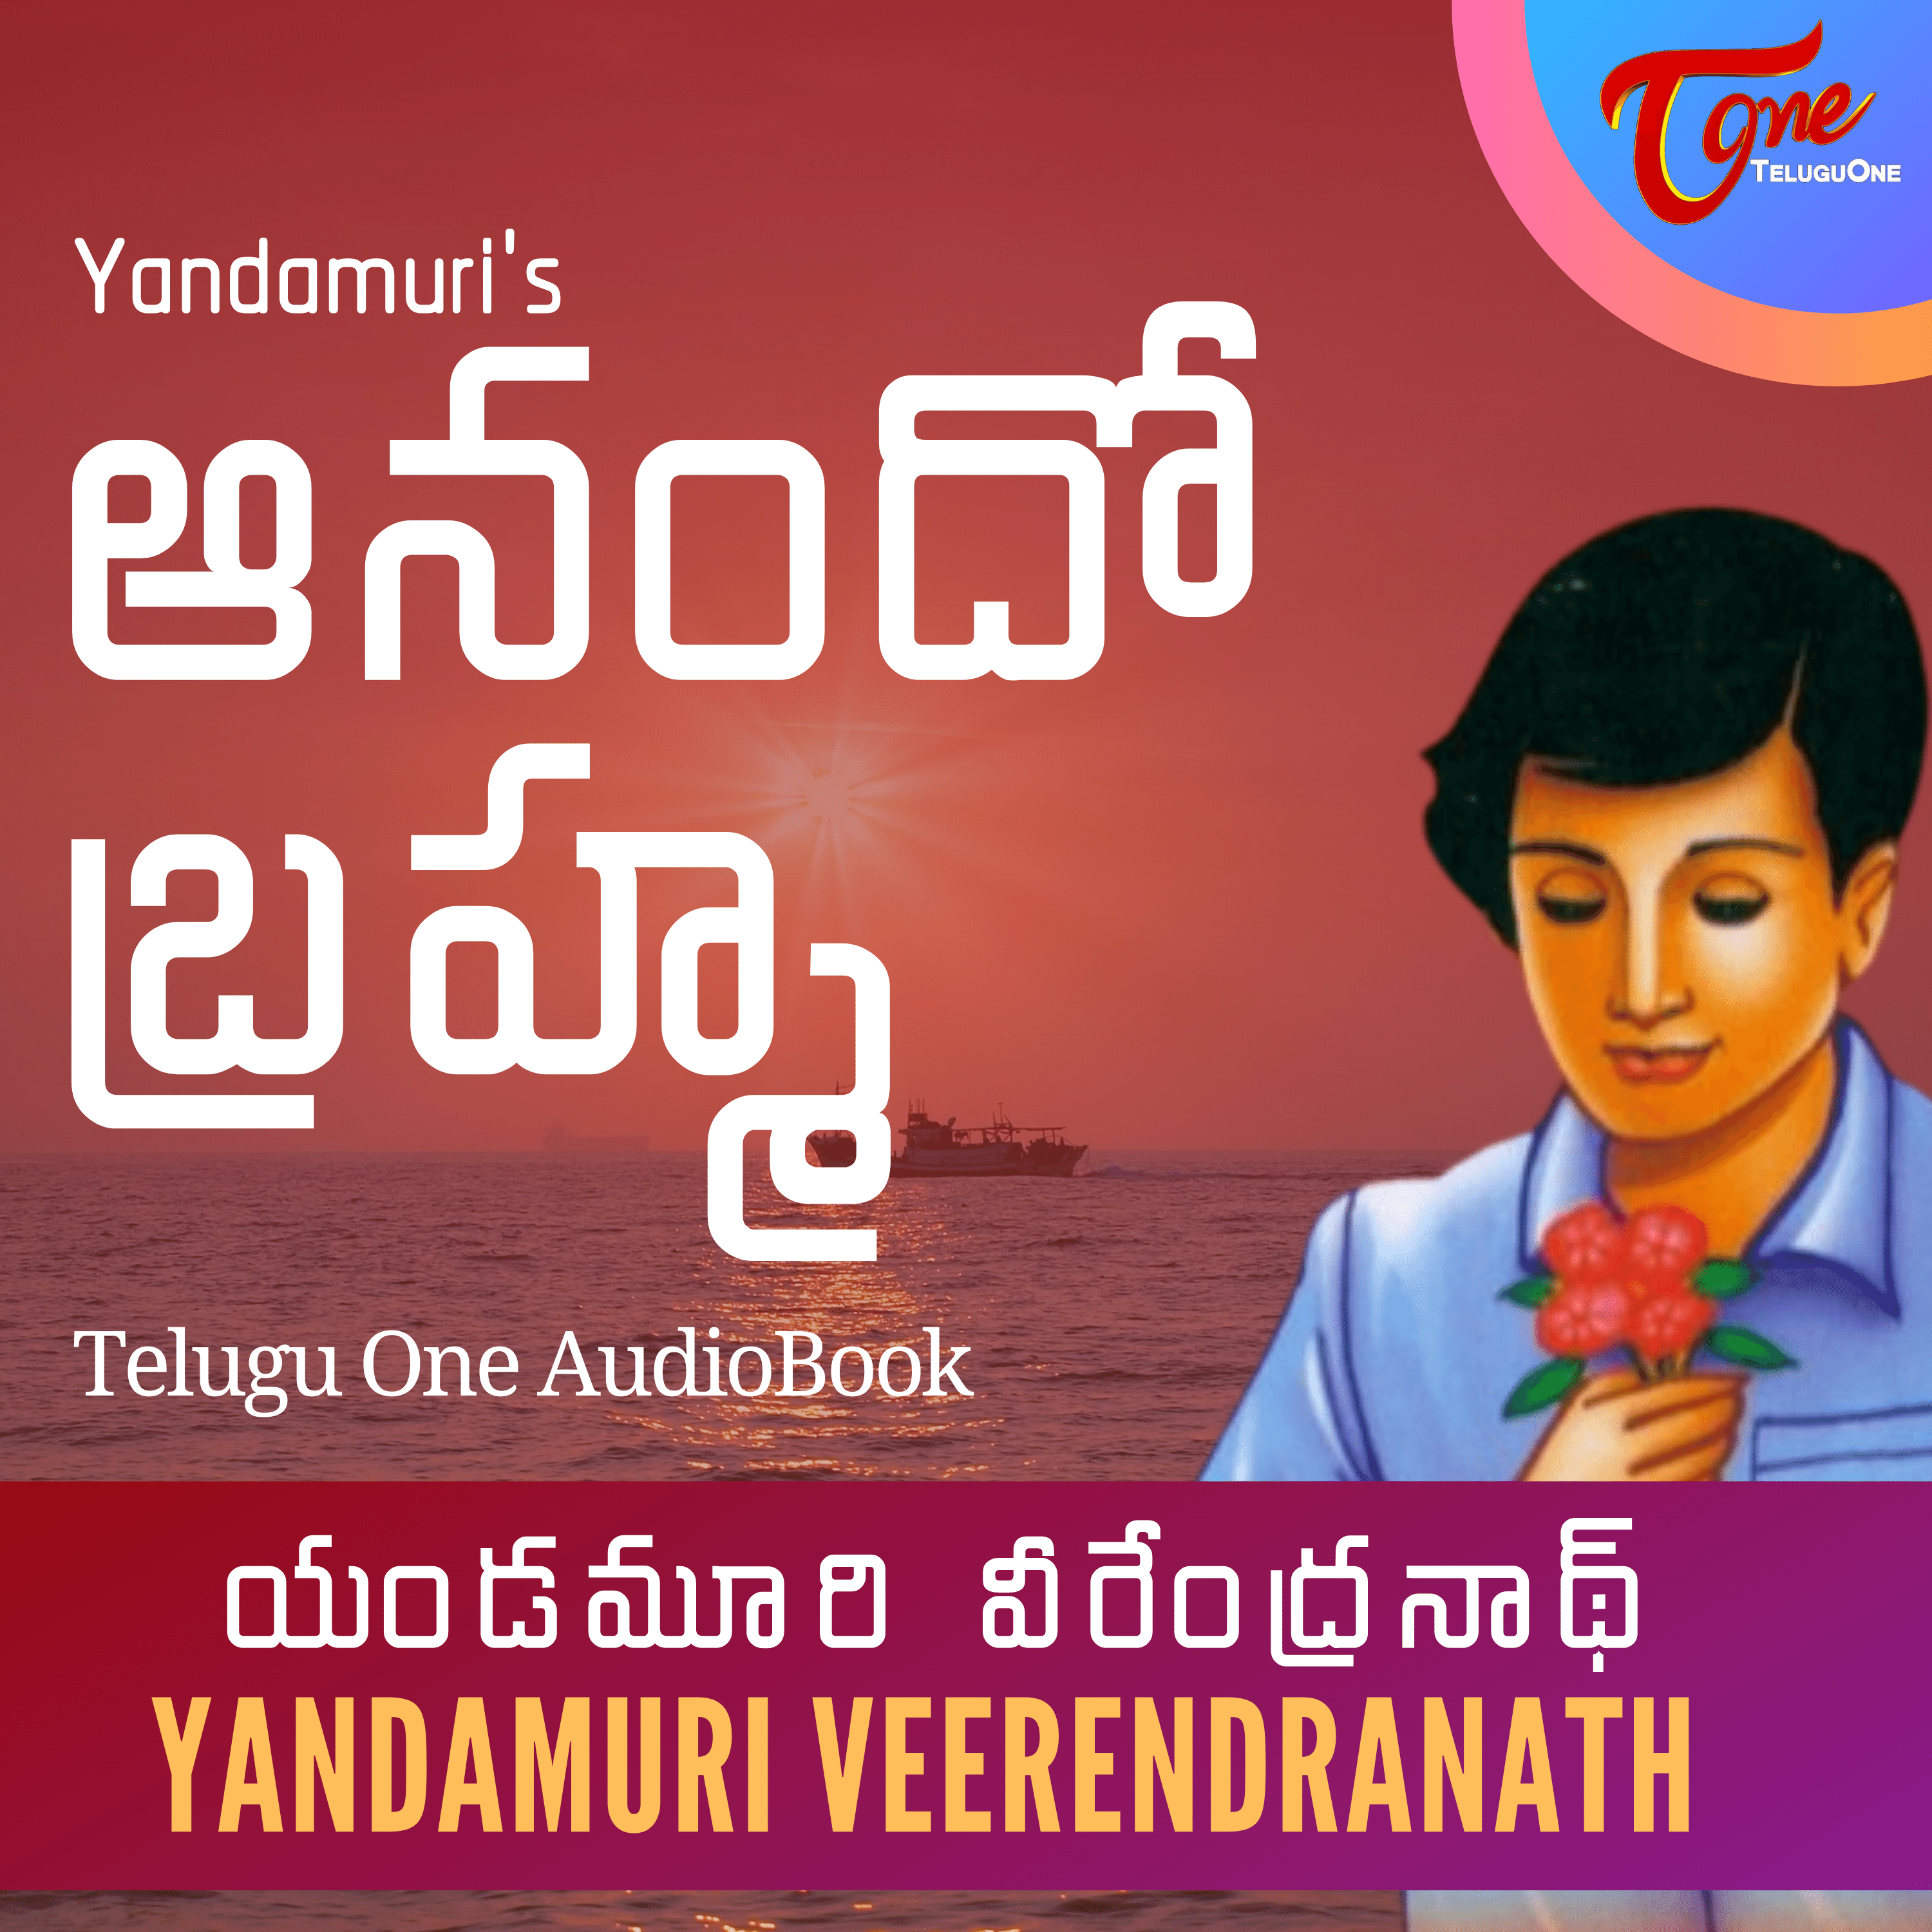 Ep 14 - Anando Bramha by Yandamoori Veerendranath - AudioBook